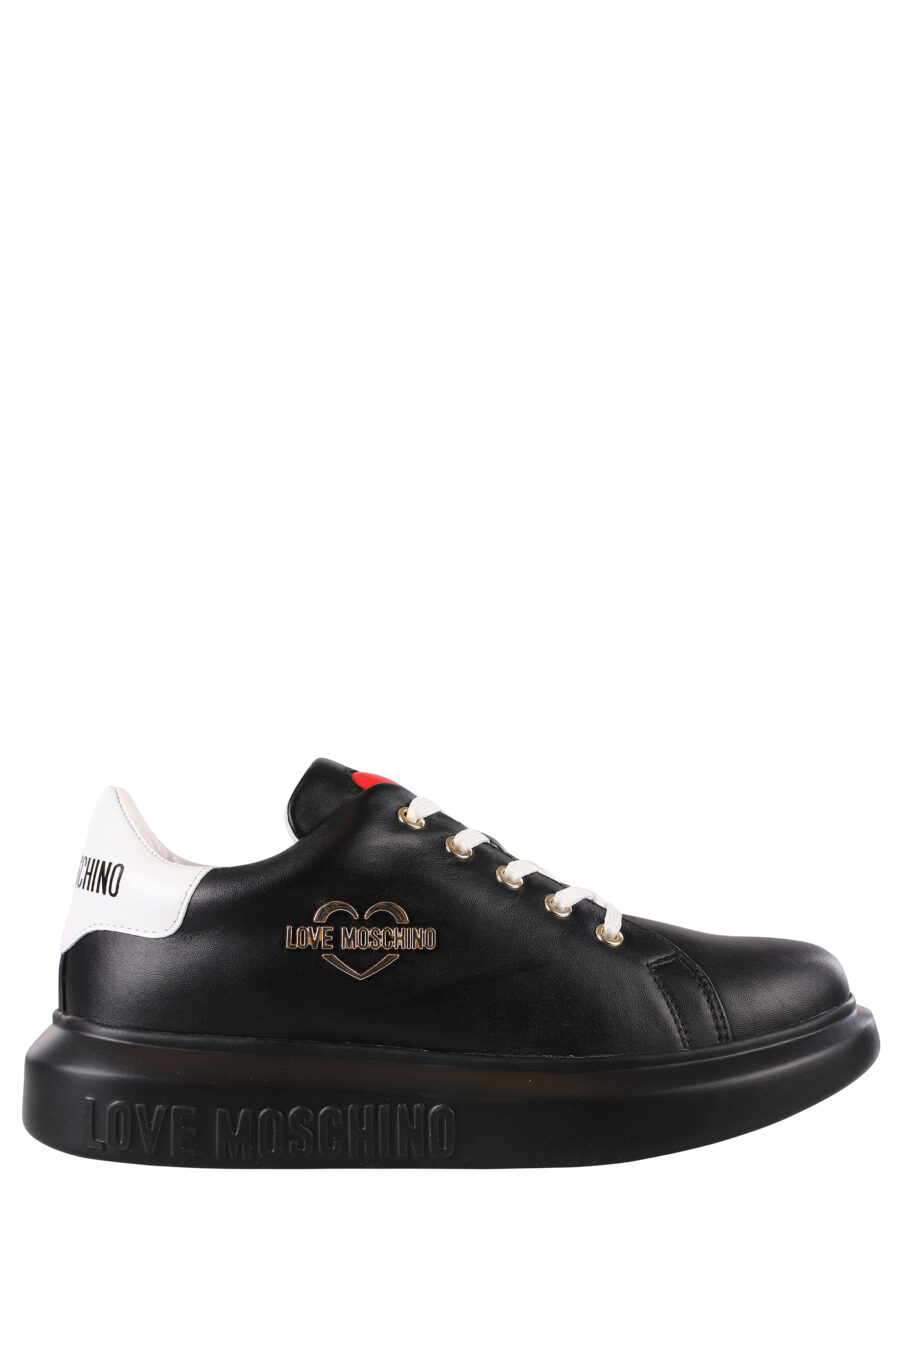 Zapatillas negras con logo en metal dorado y suela negra - IMG 1196